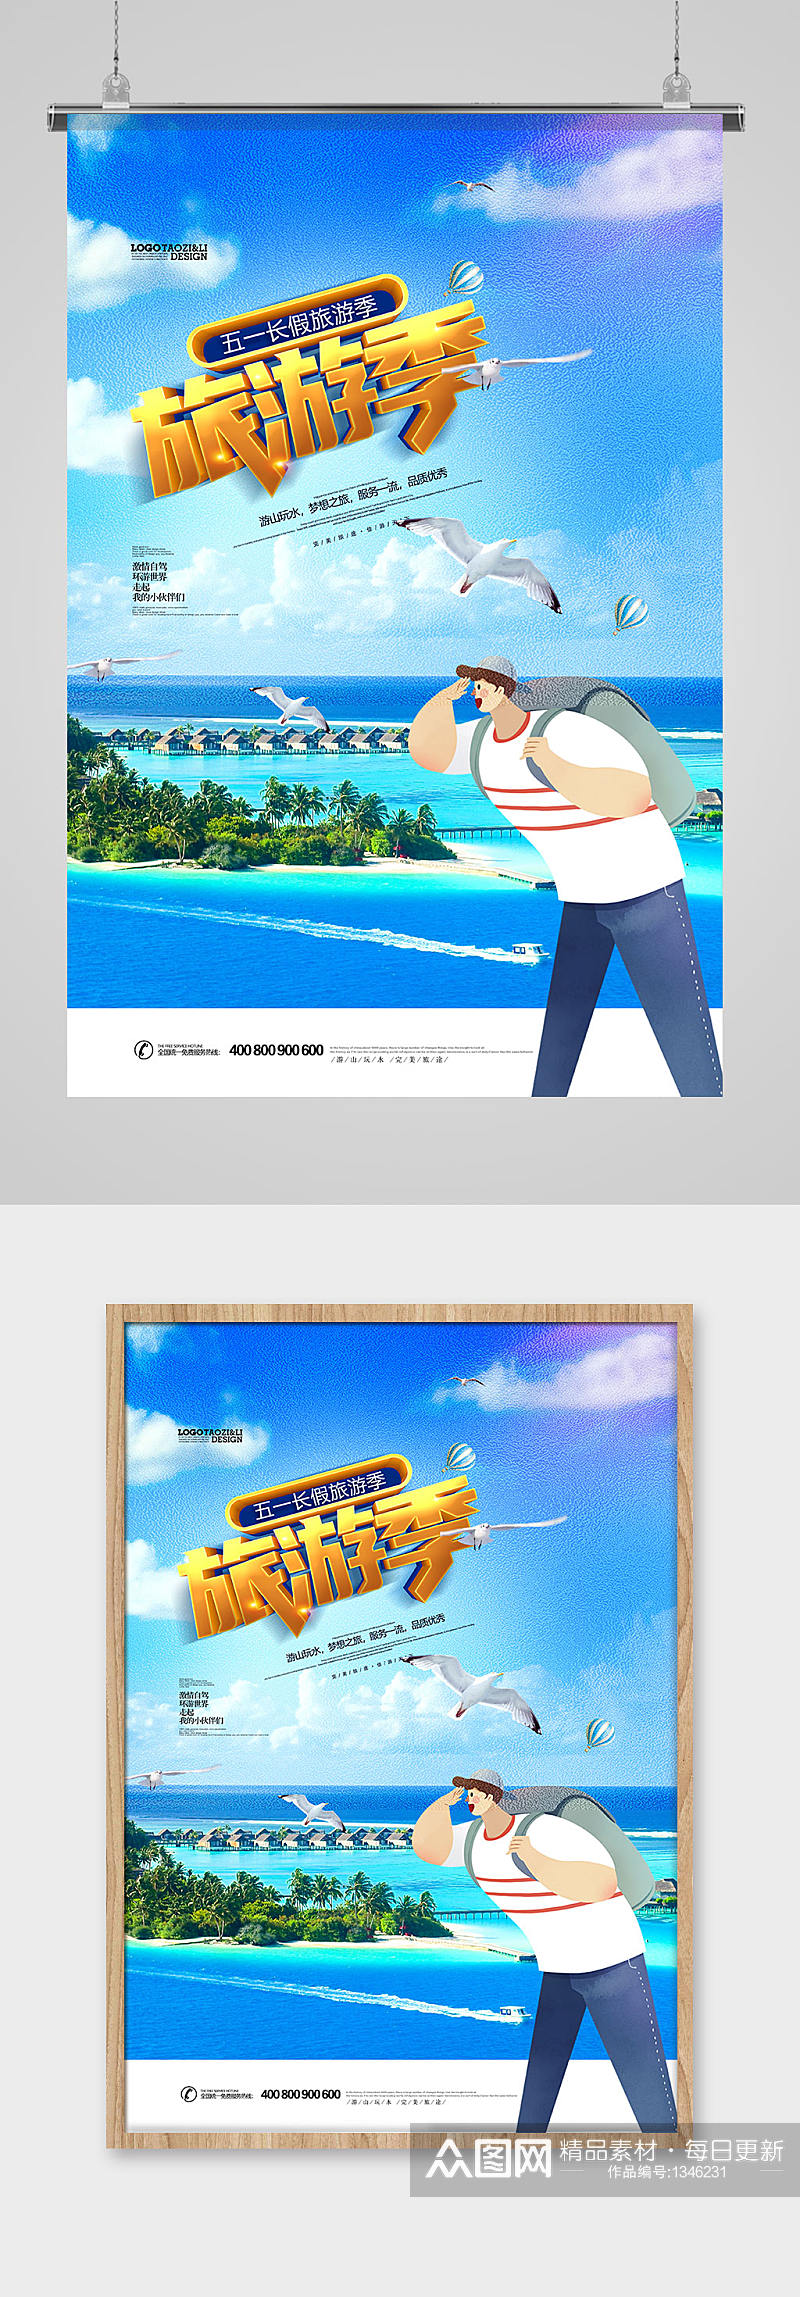 创意五一旅游季海岛旅行社宣传海报设计素材